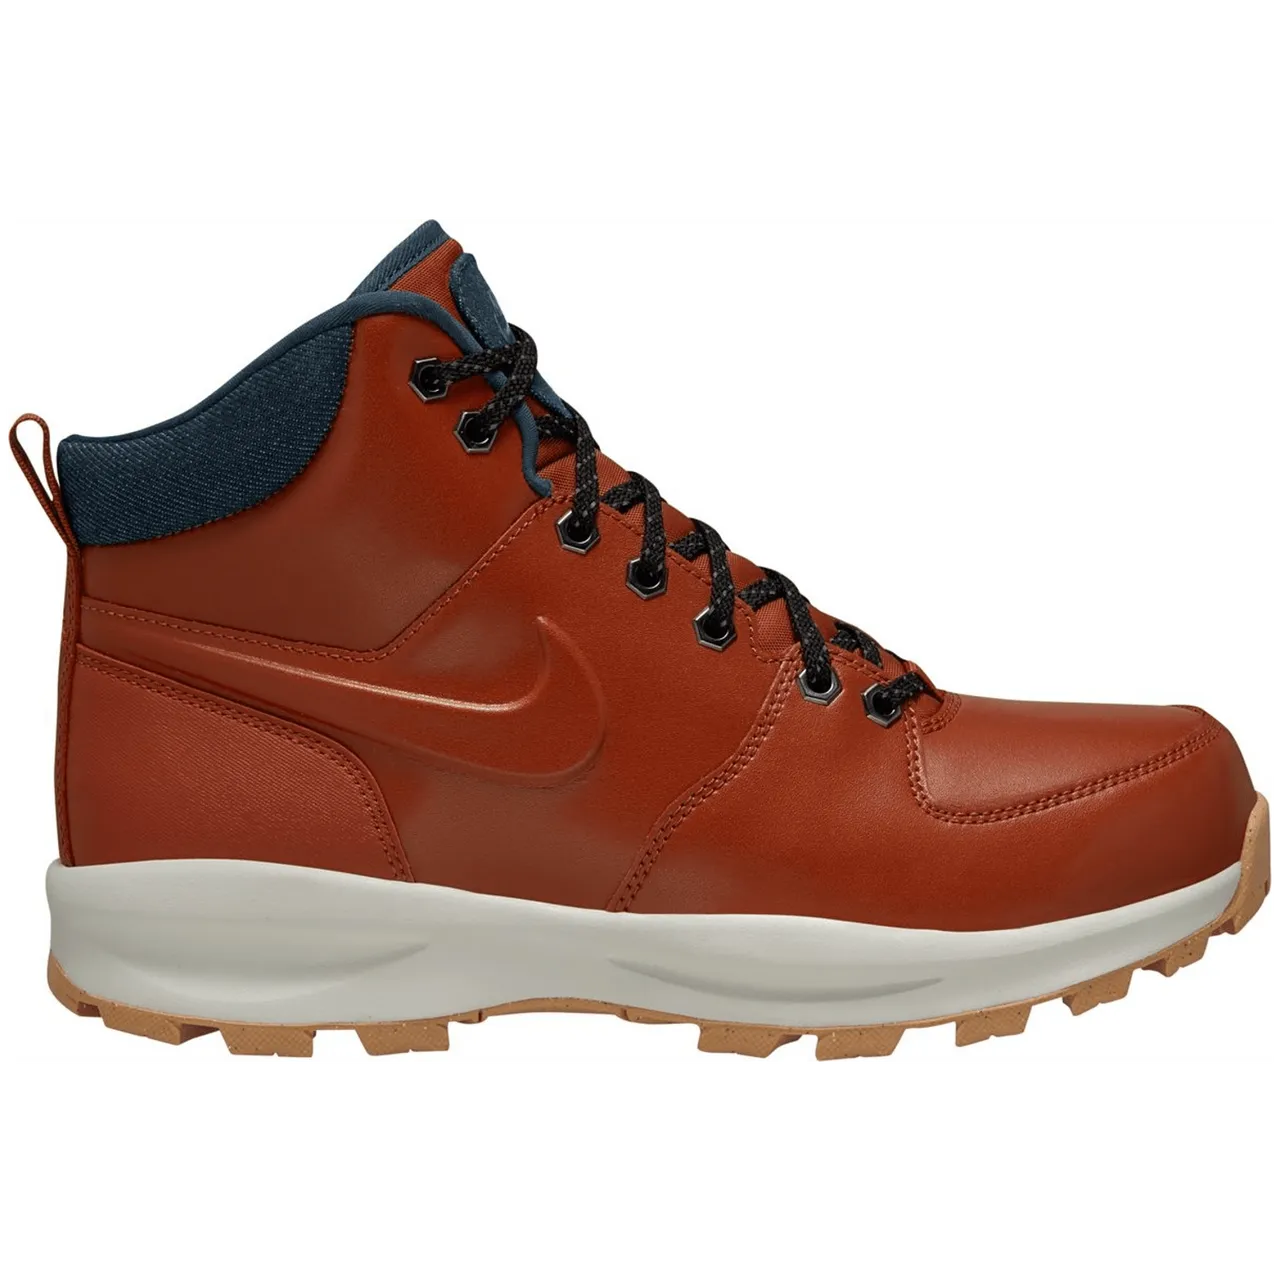 Nike Manoa Leather SEs Herren orange